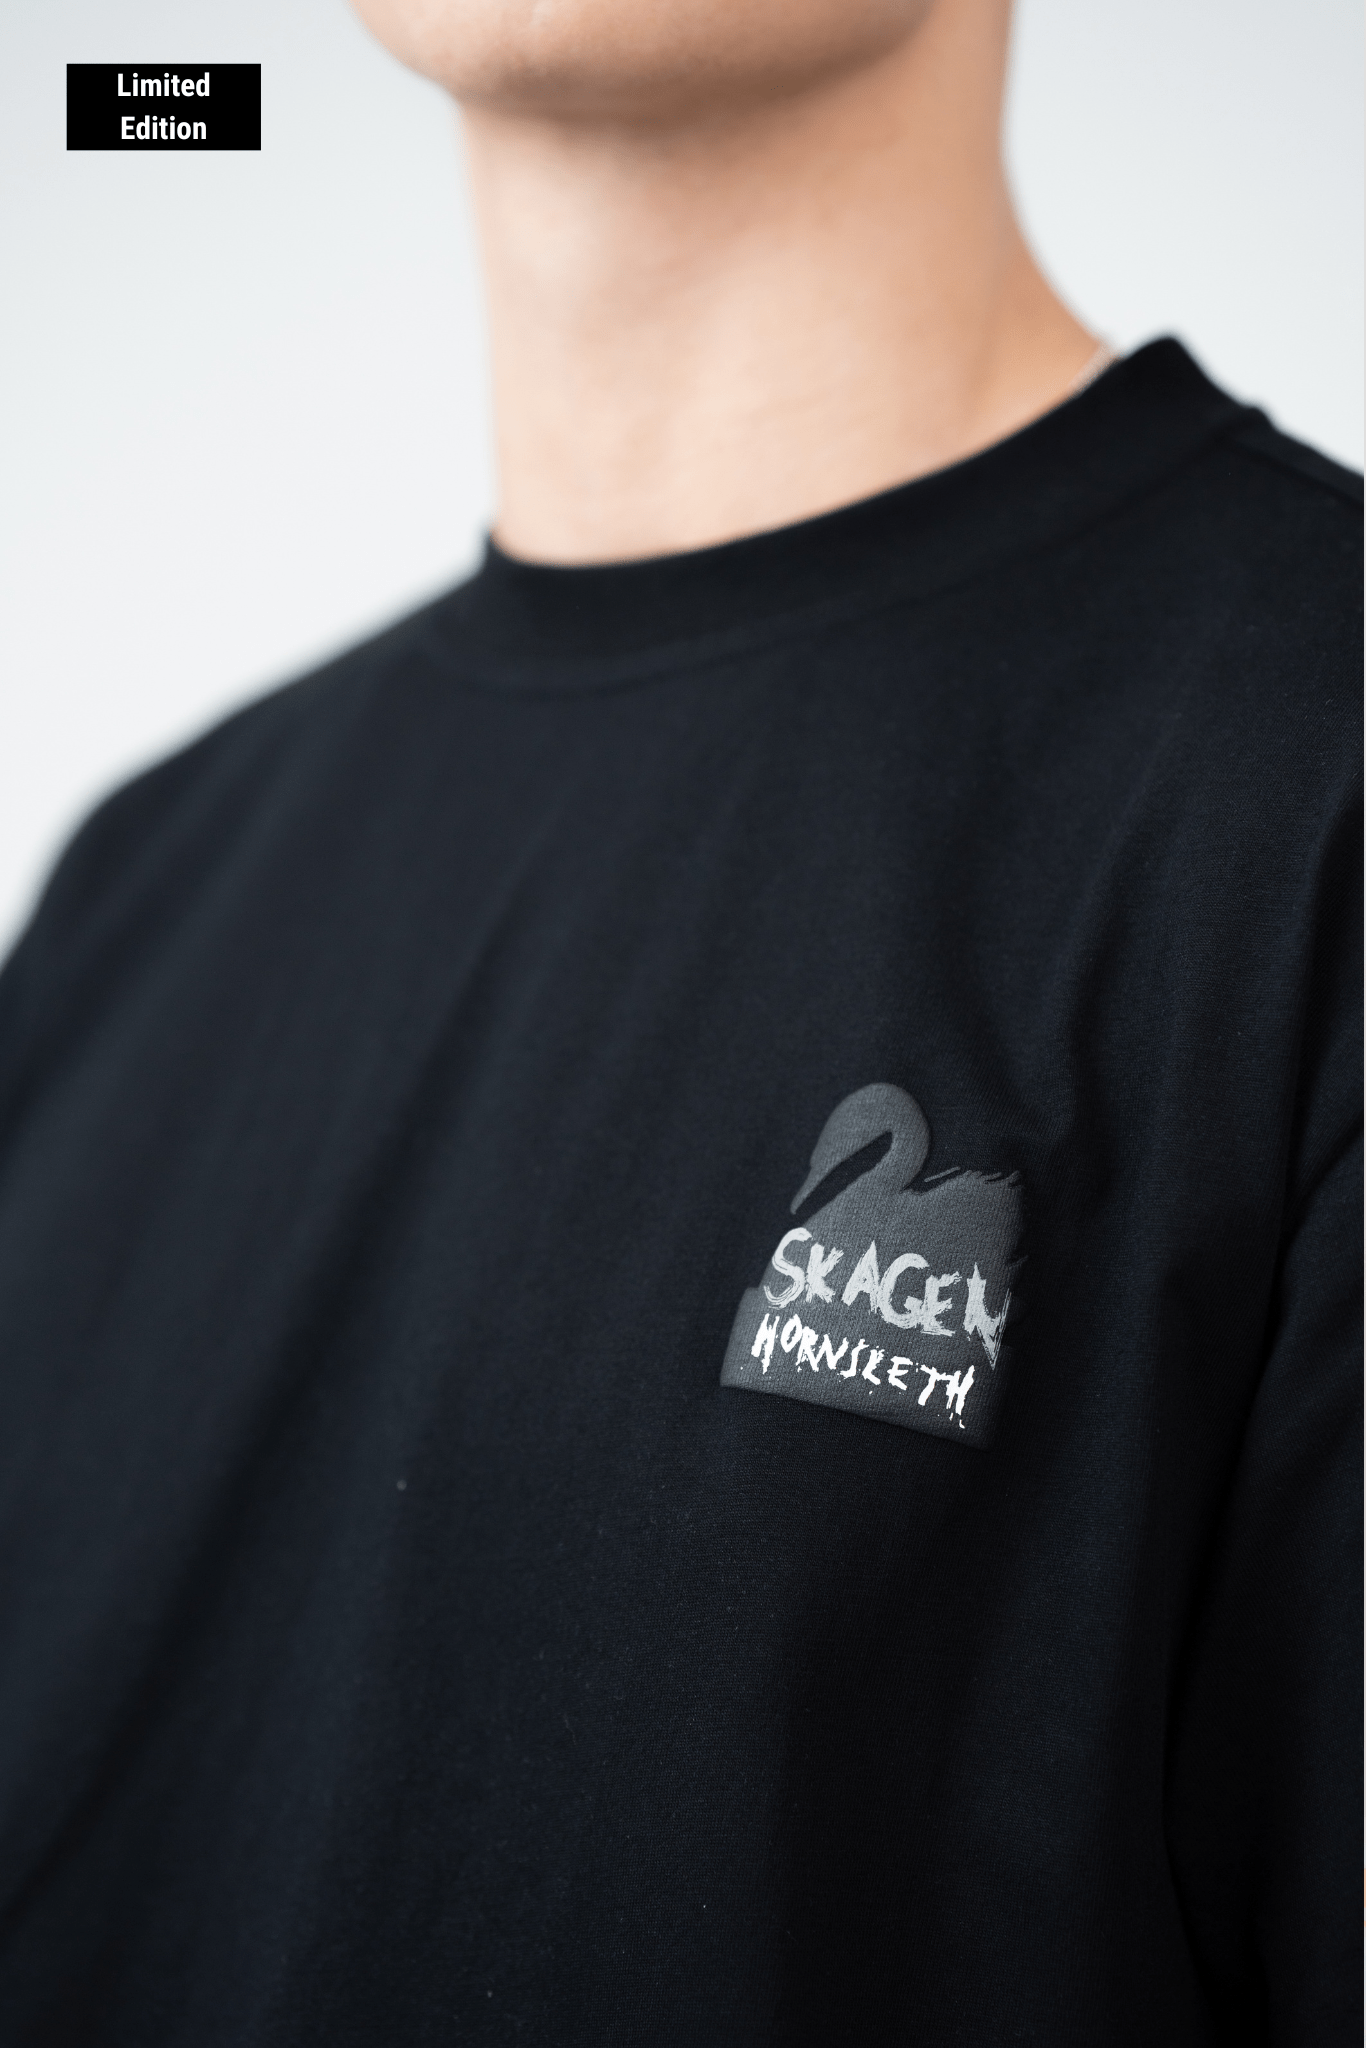 HORNSLETH X SKAGEN CLOTHING - T-shirt (Sort) - Skagen-clothing.dk